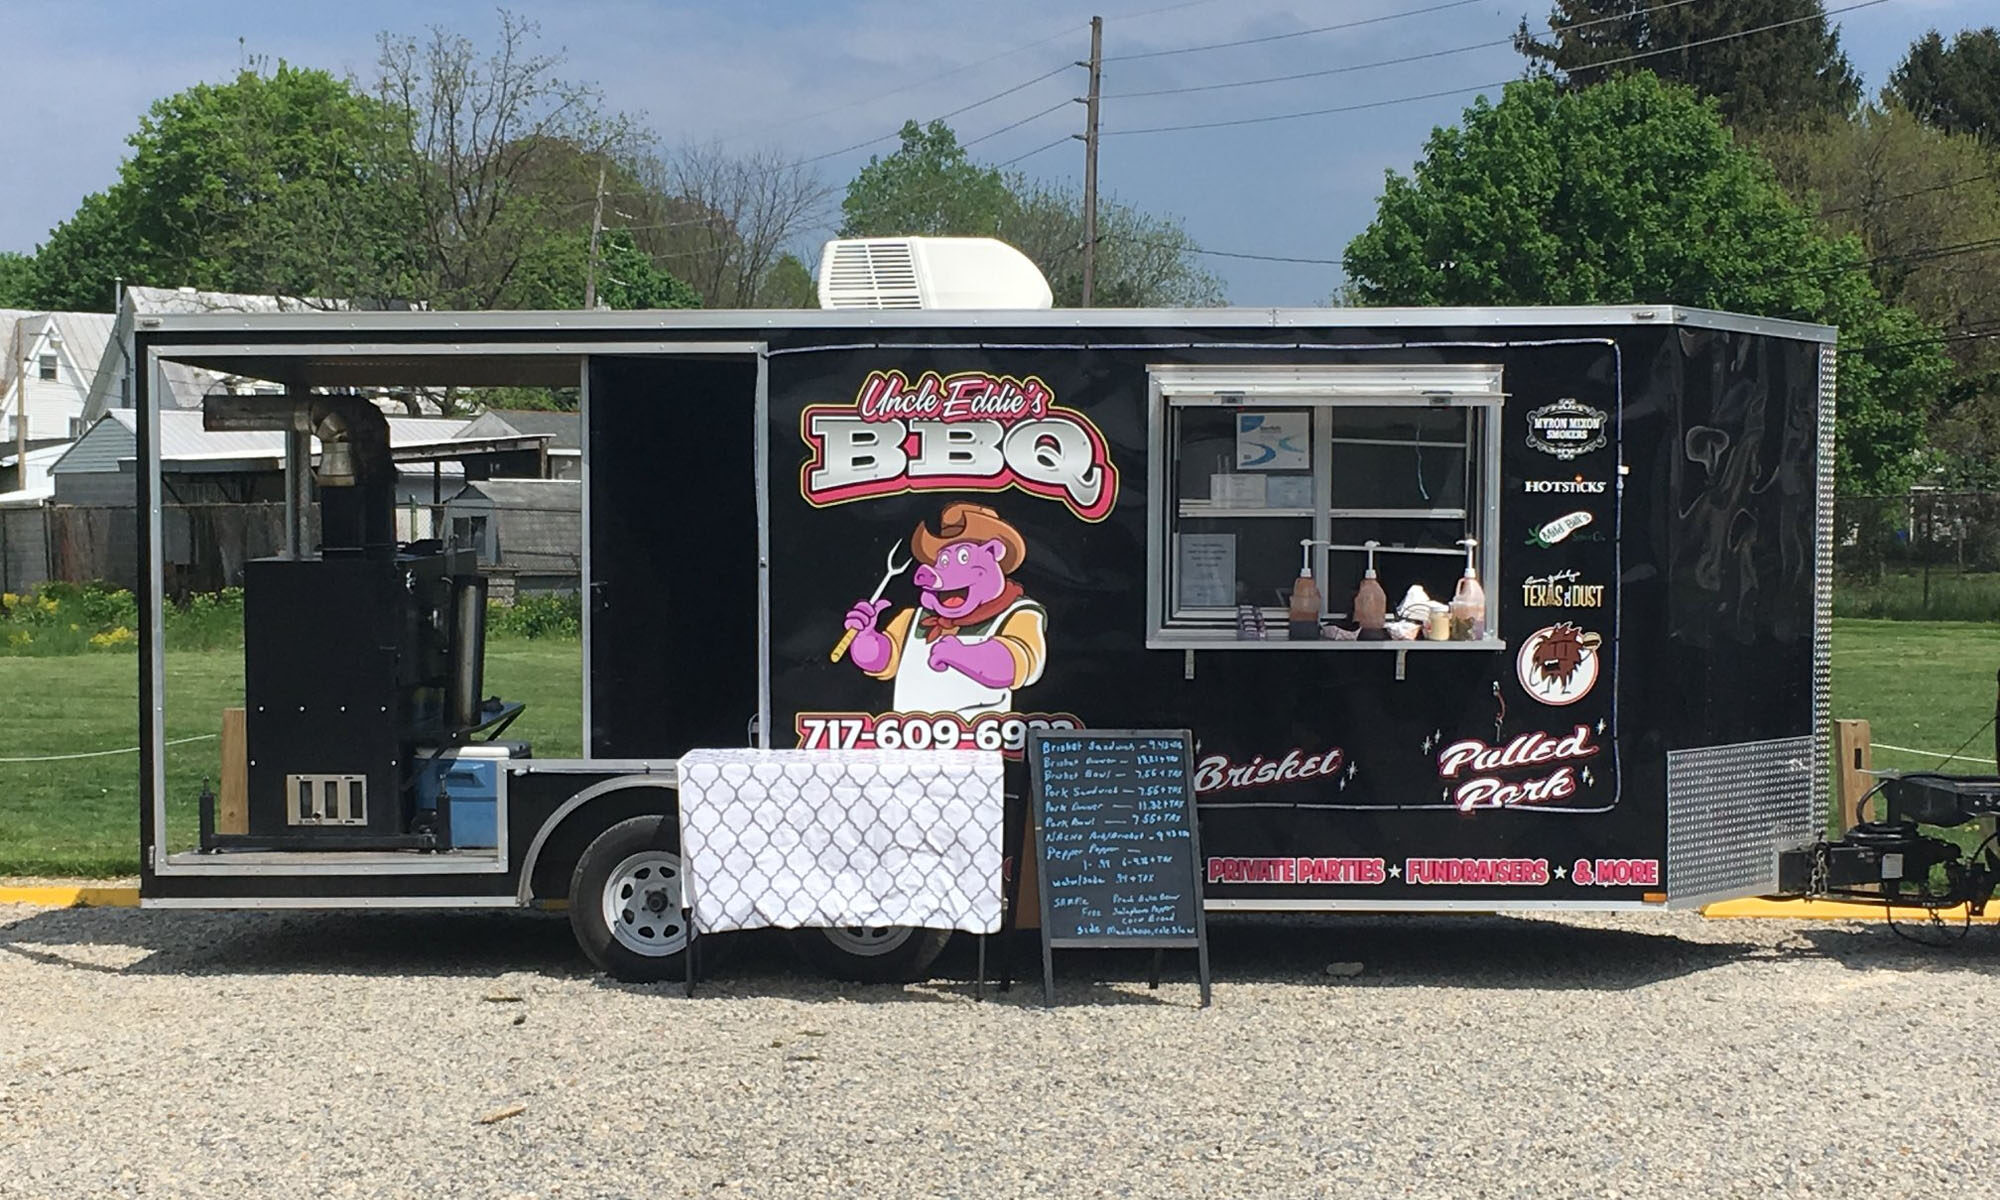 Tie Breakers Food Truck - Greenville, NC - Food Truck